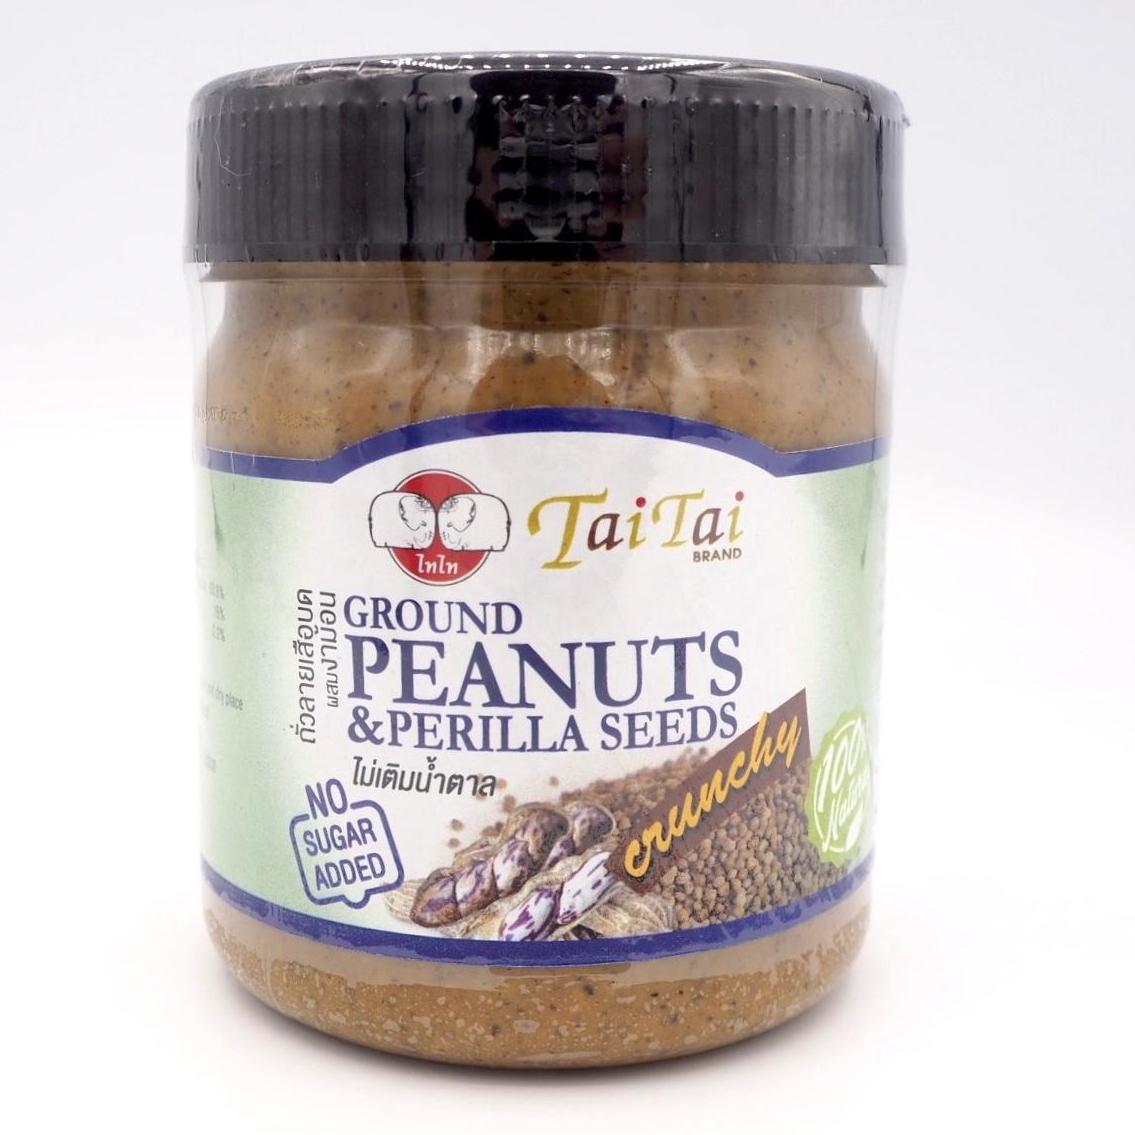 เนยถั่วลายเสือ บดผสมเมล็ดงาม้อน สูตรไม่เติมน้ำตาล ตราไทไท (TaiTai Ground Peanut & Perilla, No sugar added) ขนาด 210กรัม